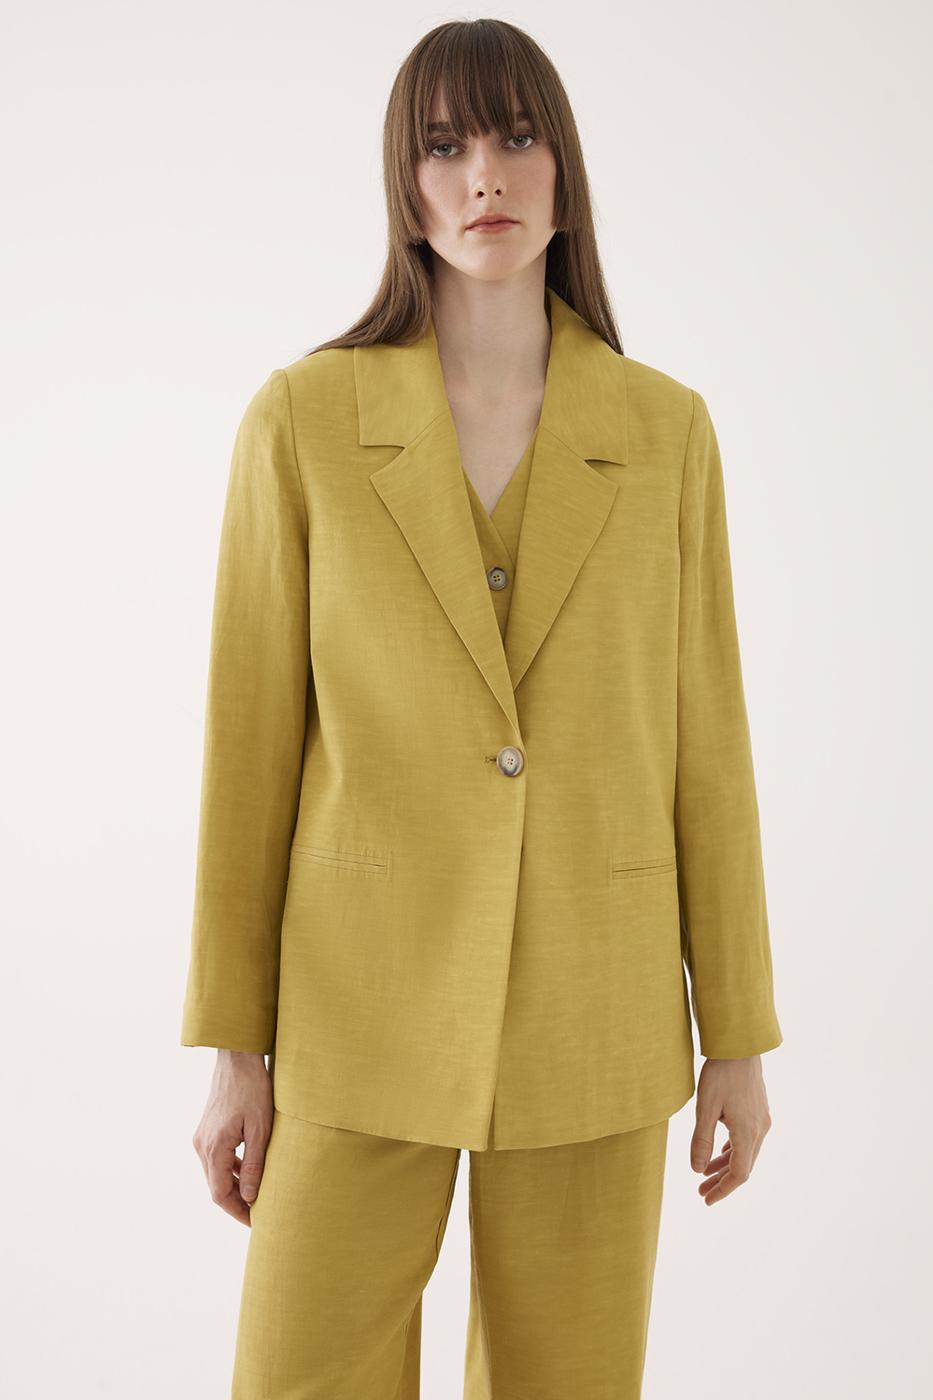 Fragile Regular Fit Standart Boy Takma Kol Ceket Yaka Yağ Yeşili Renk Kadın Ceket